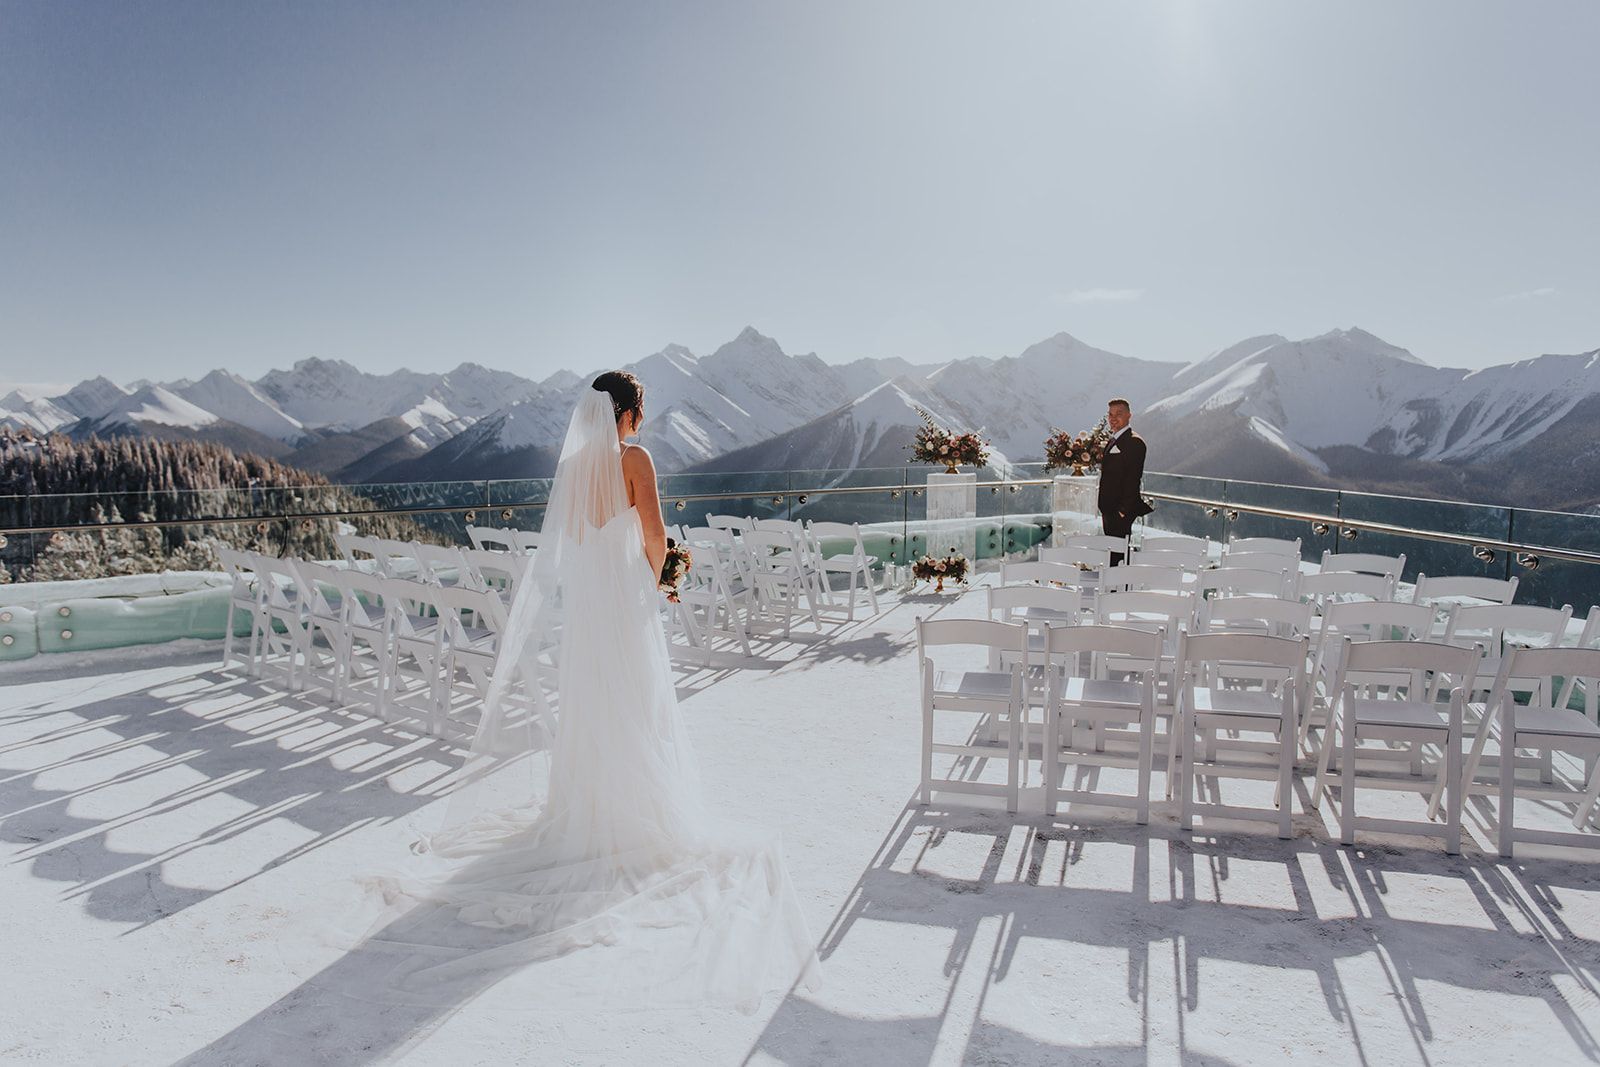 Sky Bistro Banff Wedding - Featured on Bronte Bride, winter wedding inspiration, floral ceremony installation